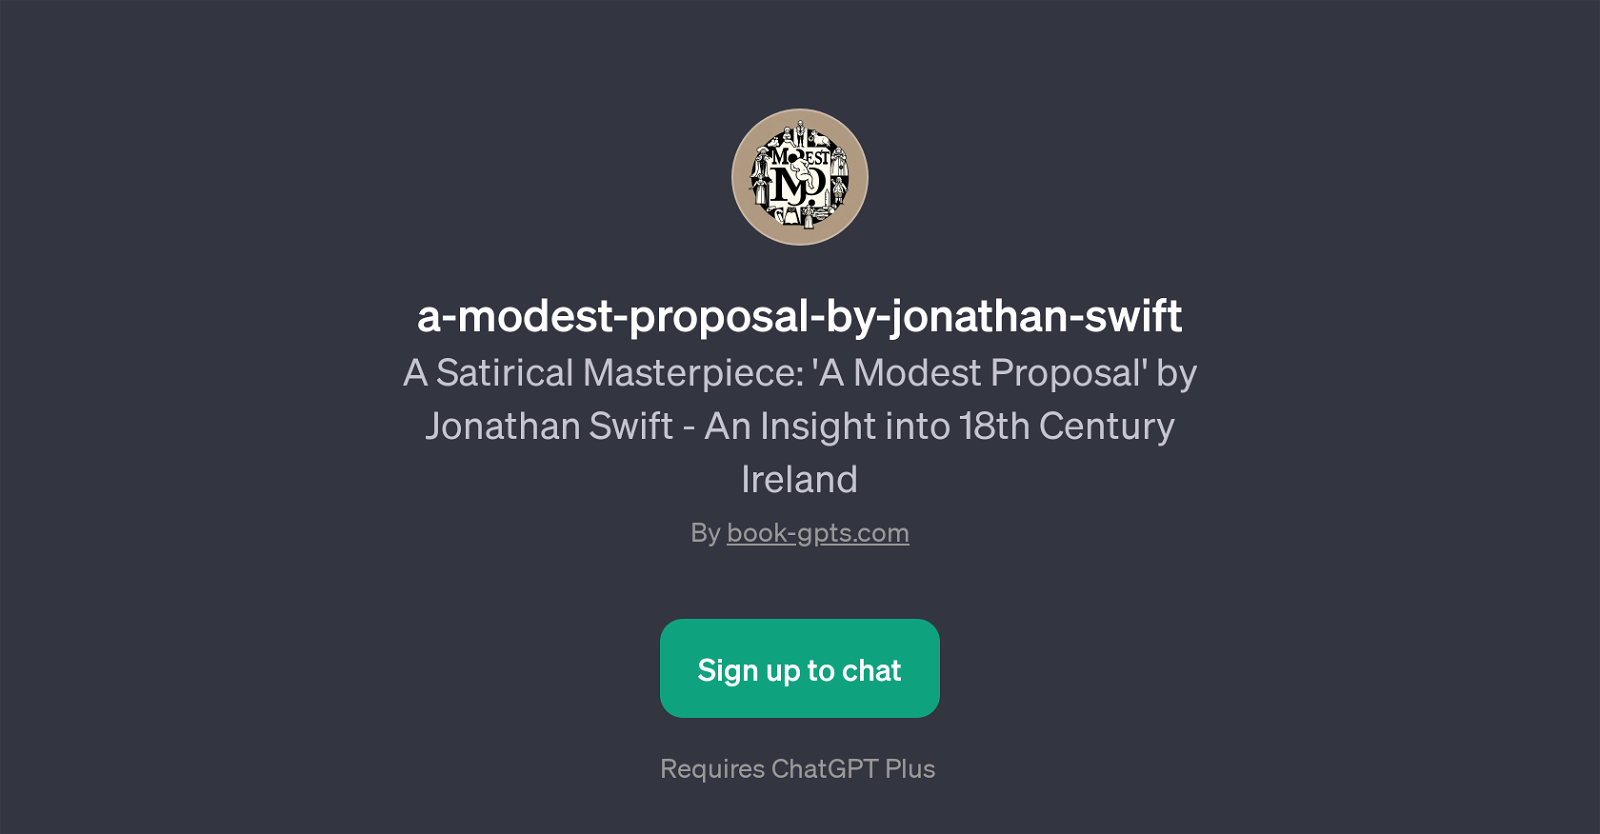 A Modest Proposal - by Jonathan Swift website